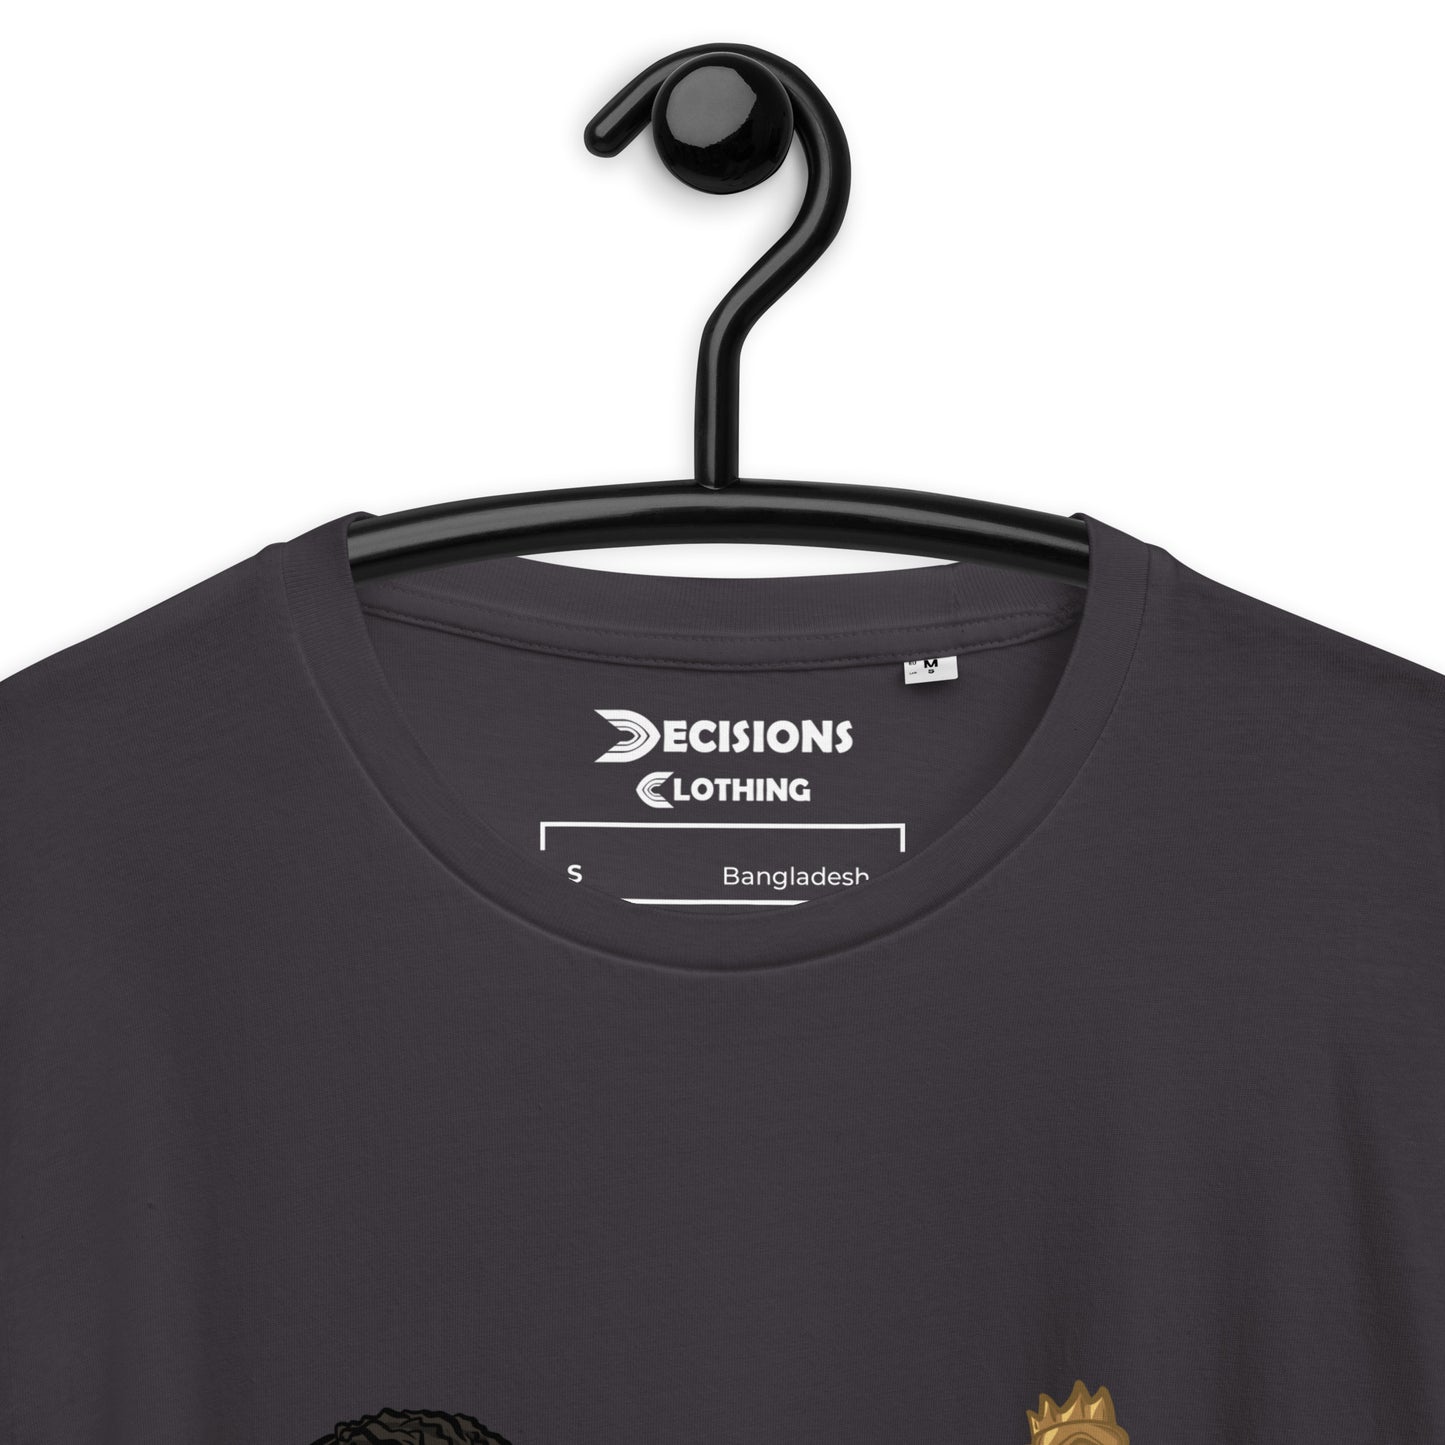 Mirage Nessie T-Shirt (Apex Legends)